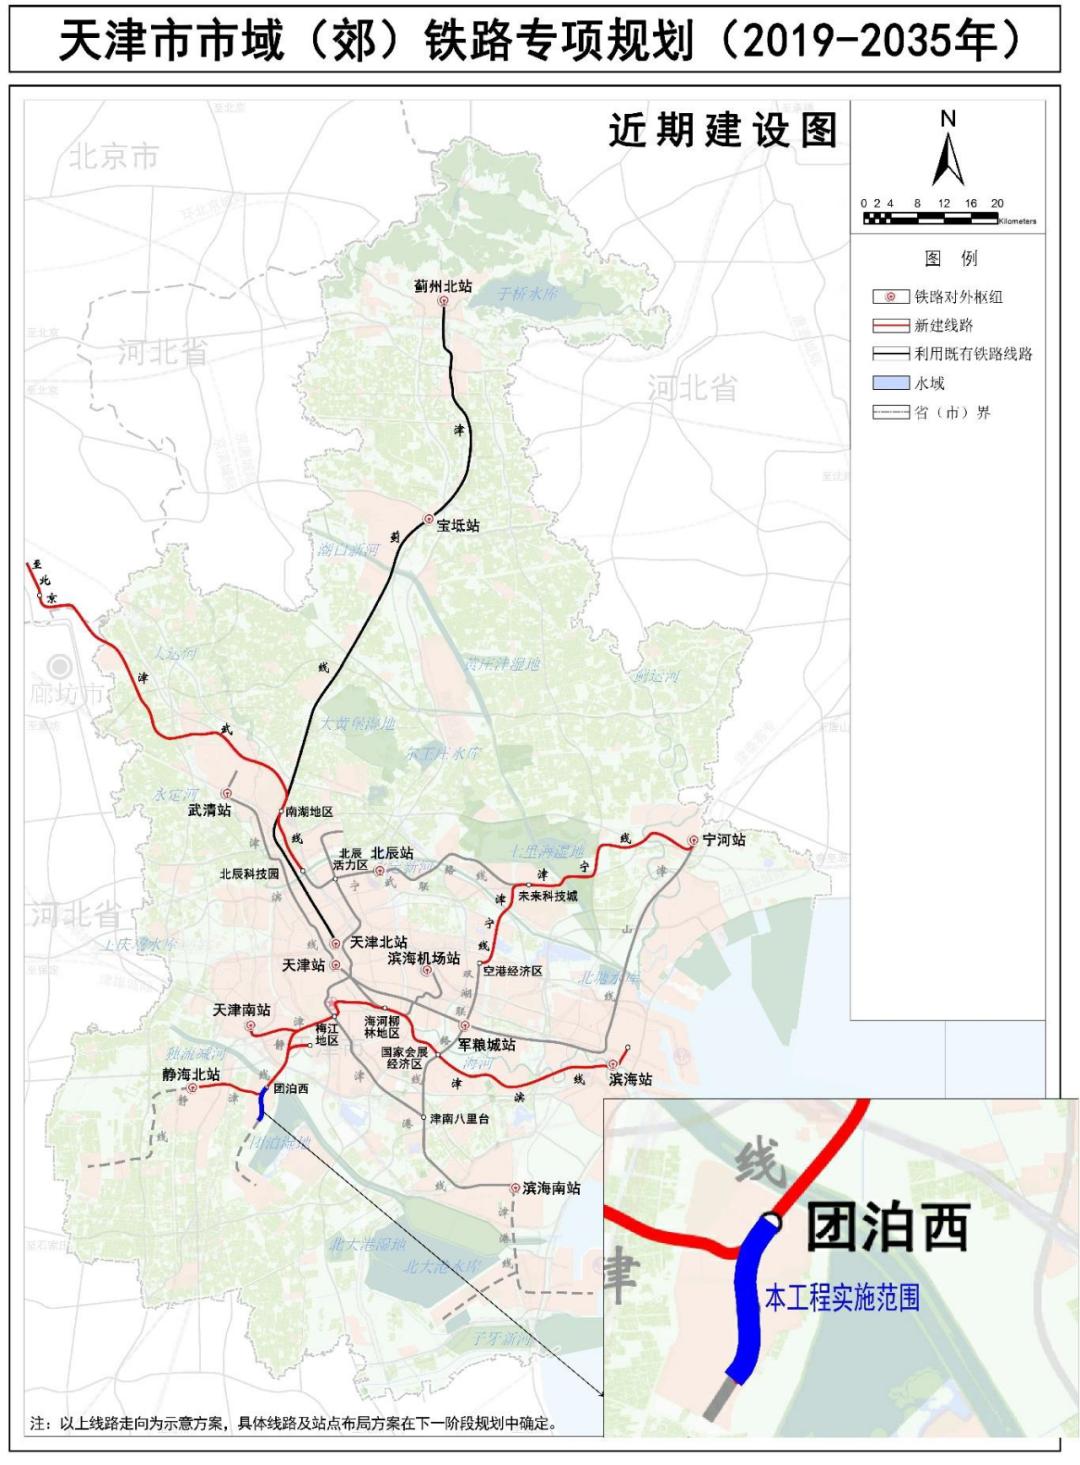 ▲工程在市域（郊）铁路规划近期建设方案中的方位示意图